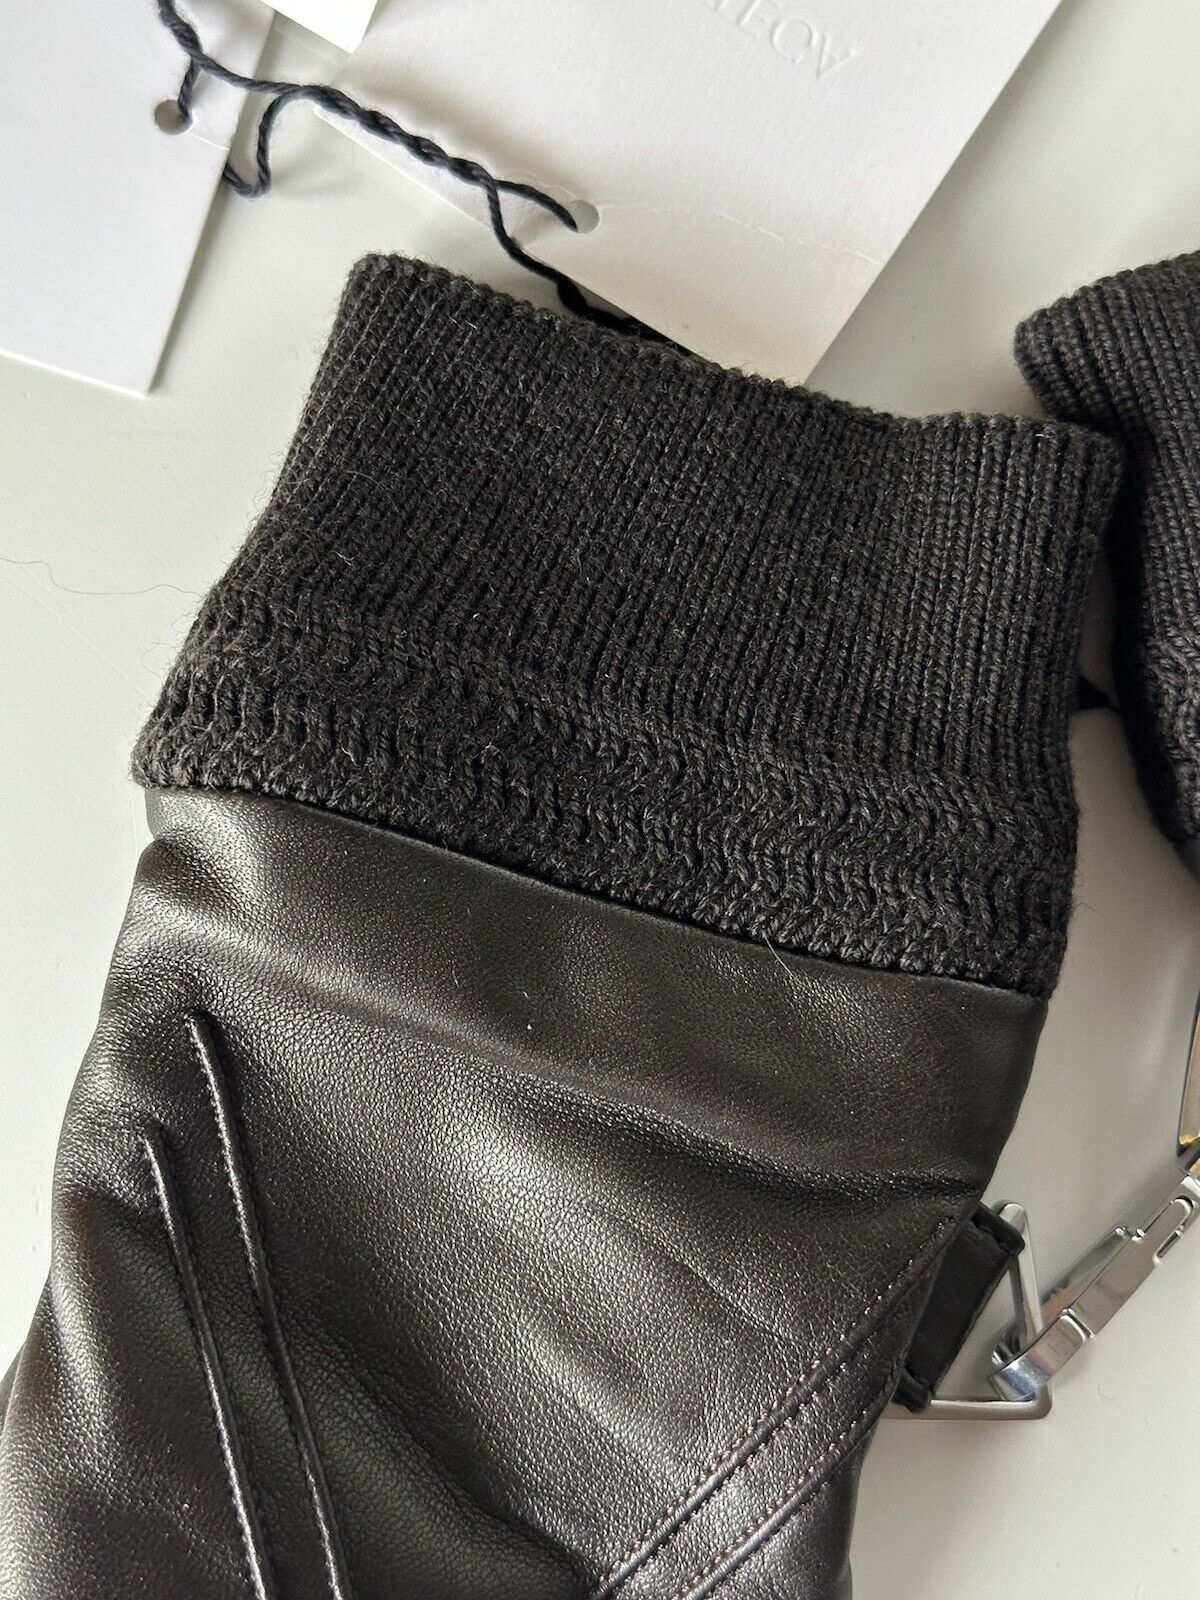 NWT $650 Bottega Veneta Women's Leather Gloves Brown Size 7.5 (M) Italy 690300